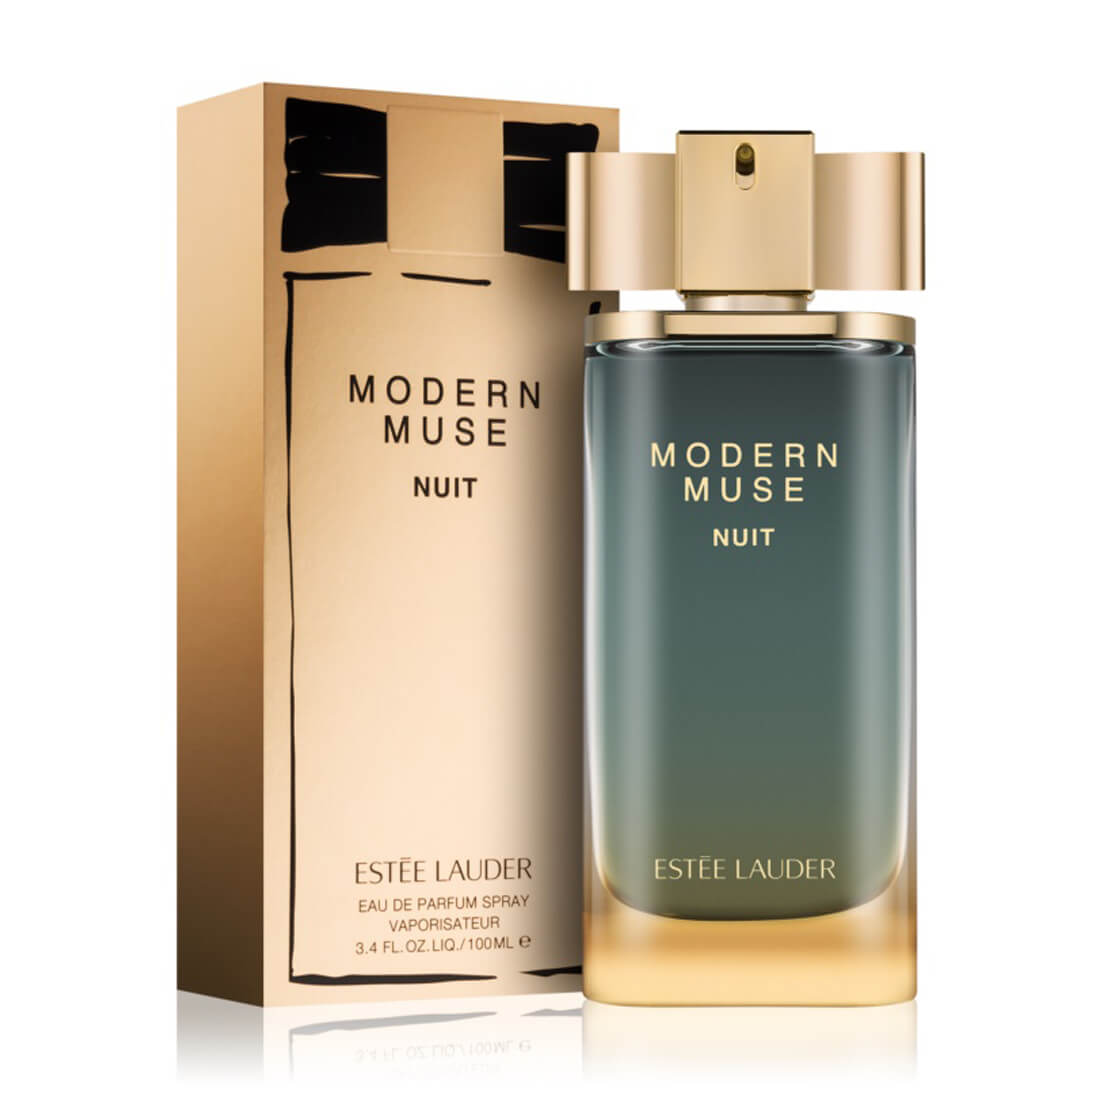 Estee Lauder Modern Muse Nuit Eau De Parfum For Women